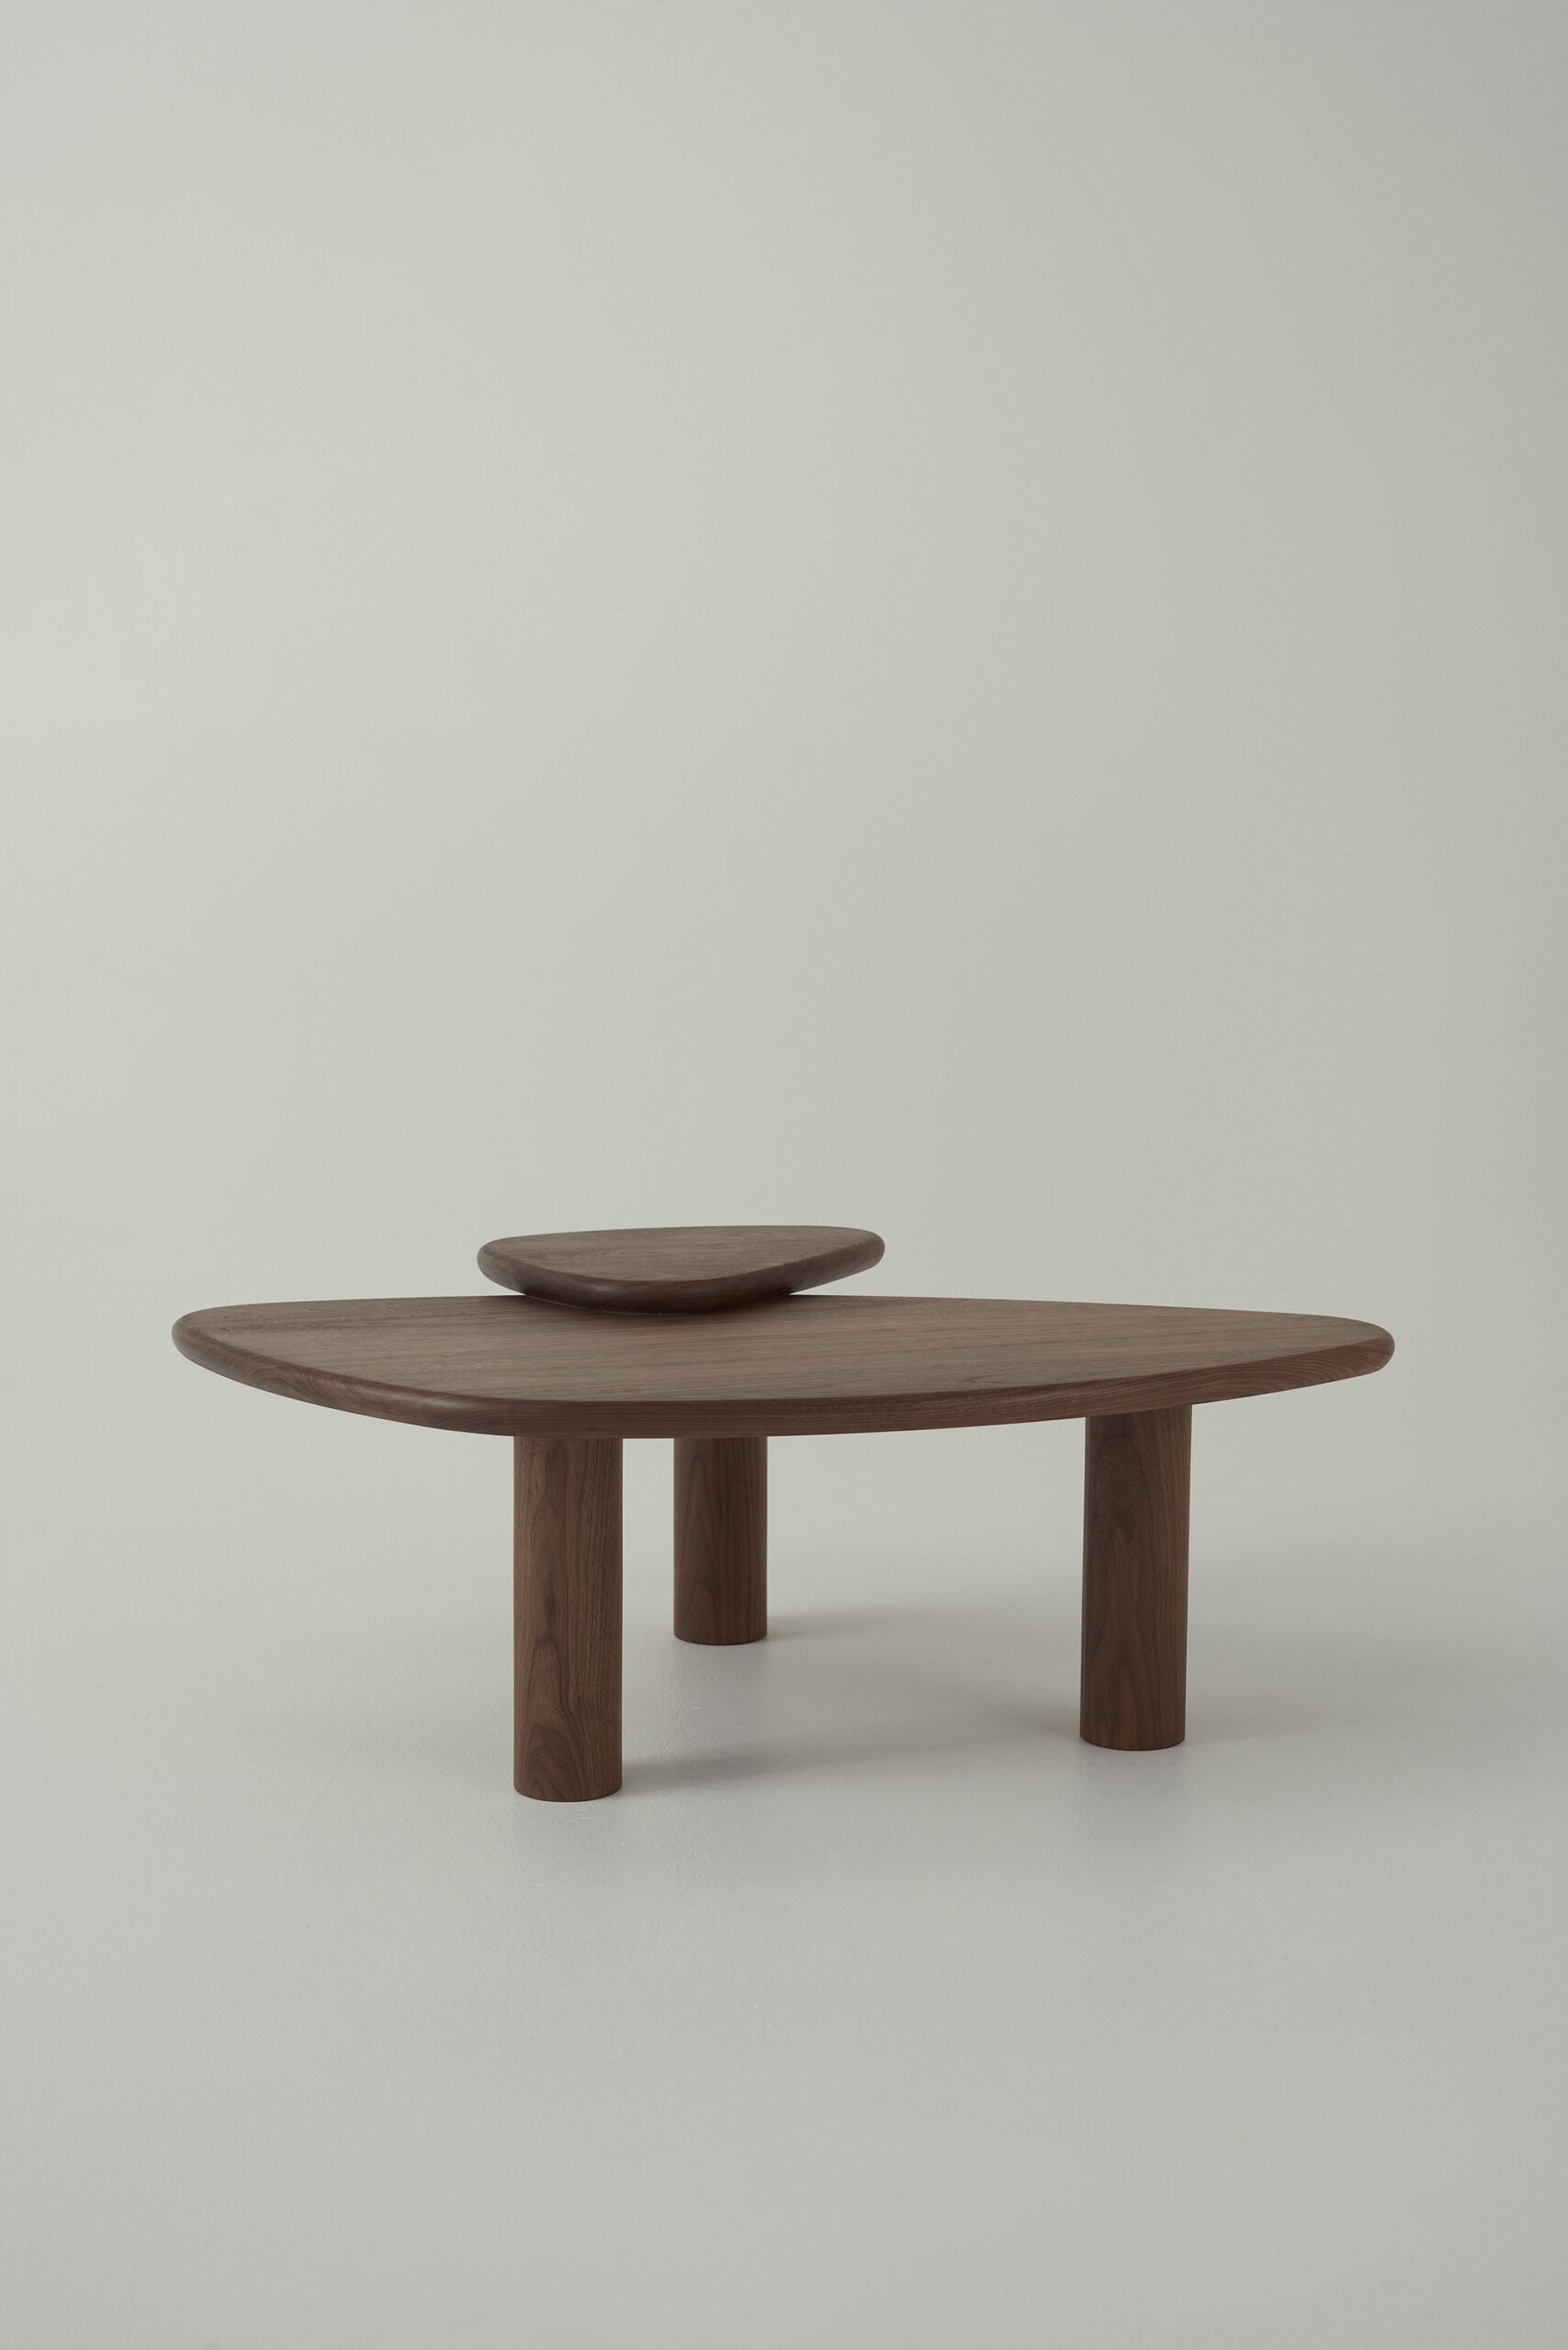 Furniture by Daniel Boddam 2